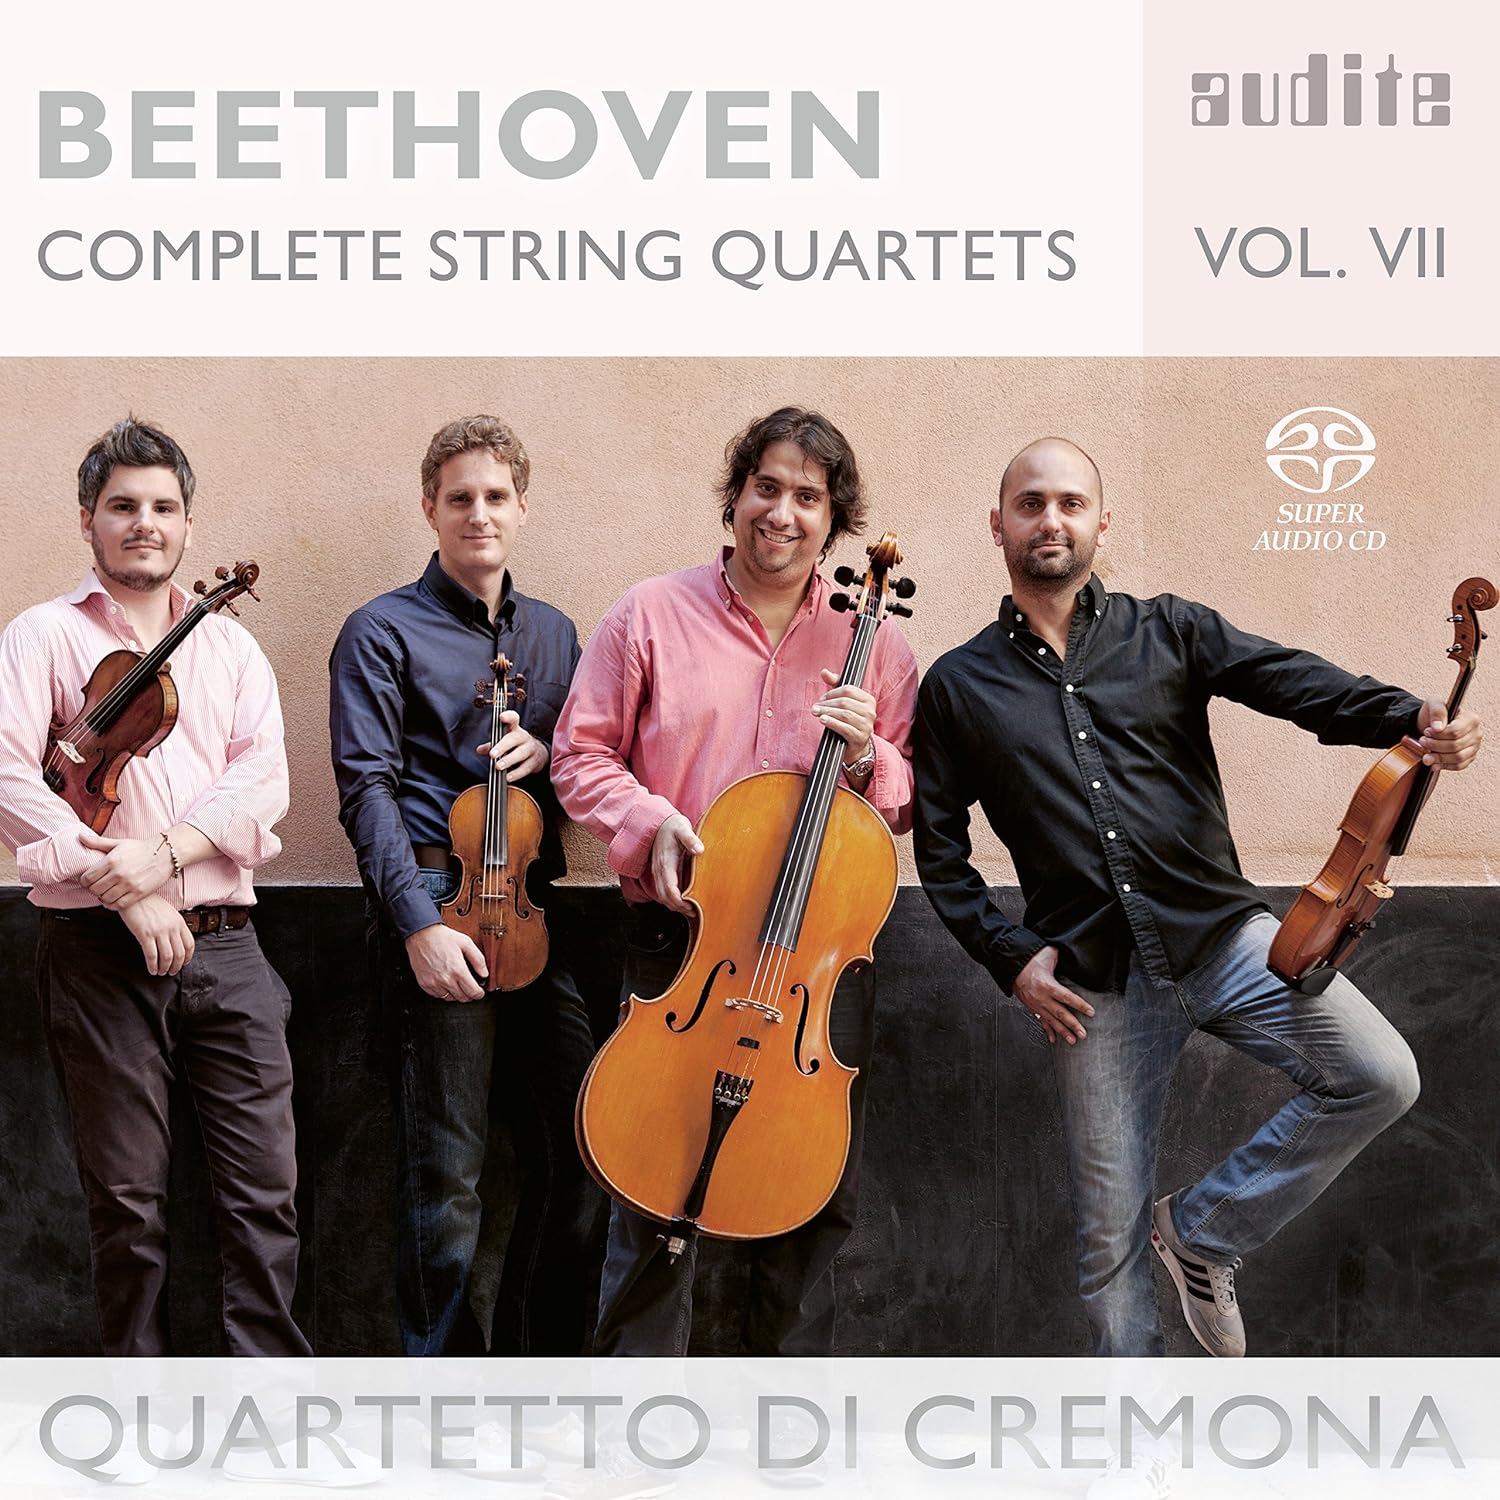 Beethoven Complete String Quartets Vol. VII